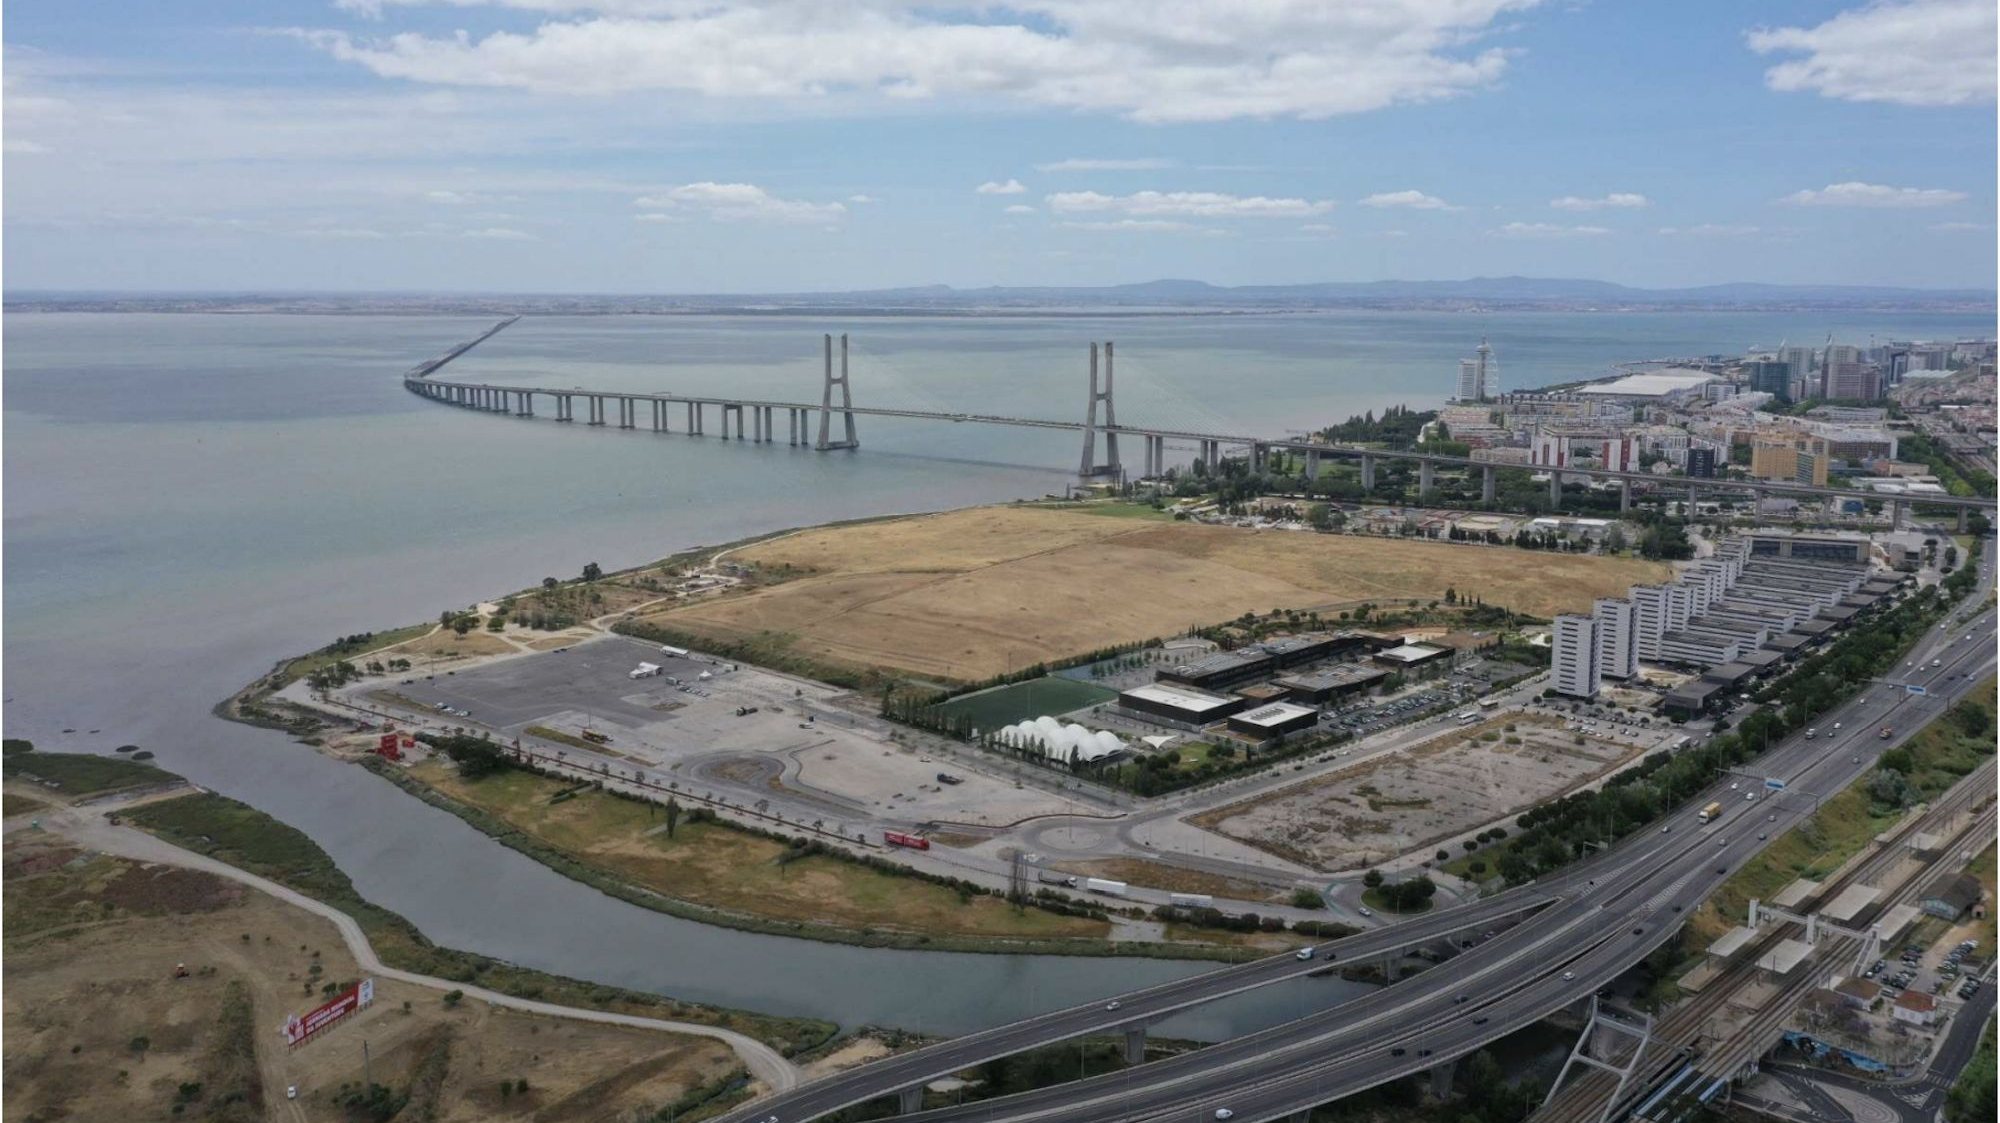 Os eventos principais da JMJ vão decorrer no Parque Tejo-Trancão, na zona ocidental de Lisboa